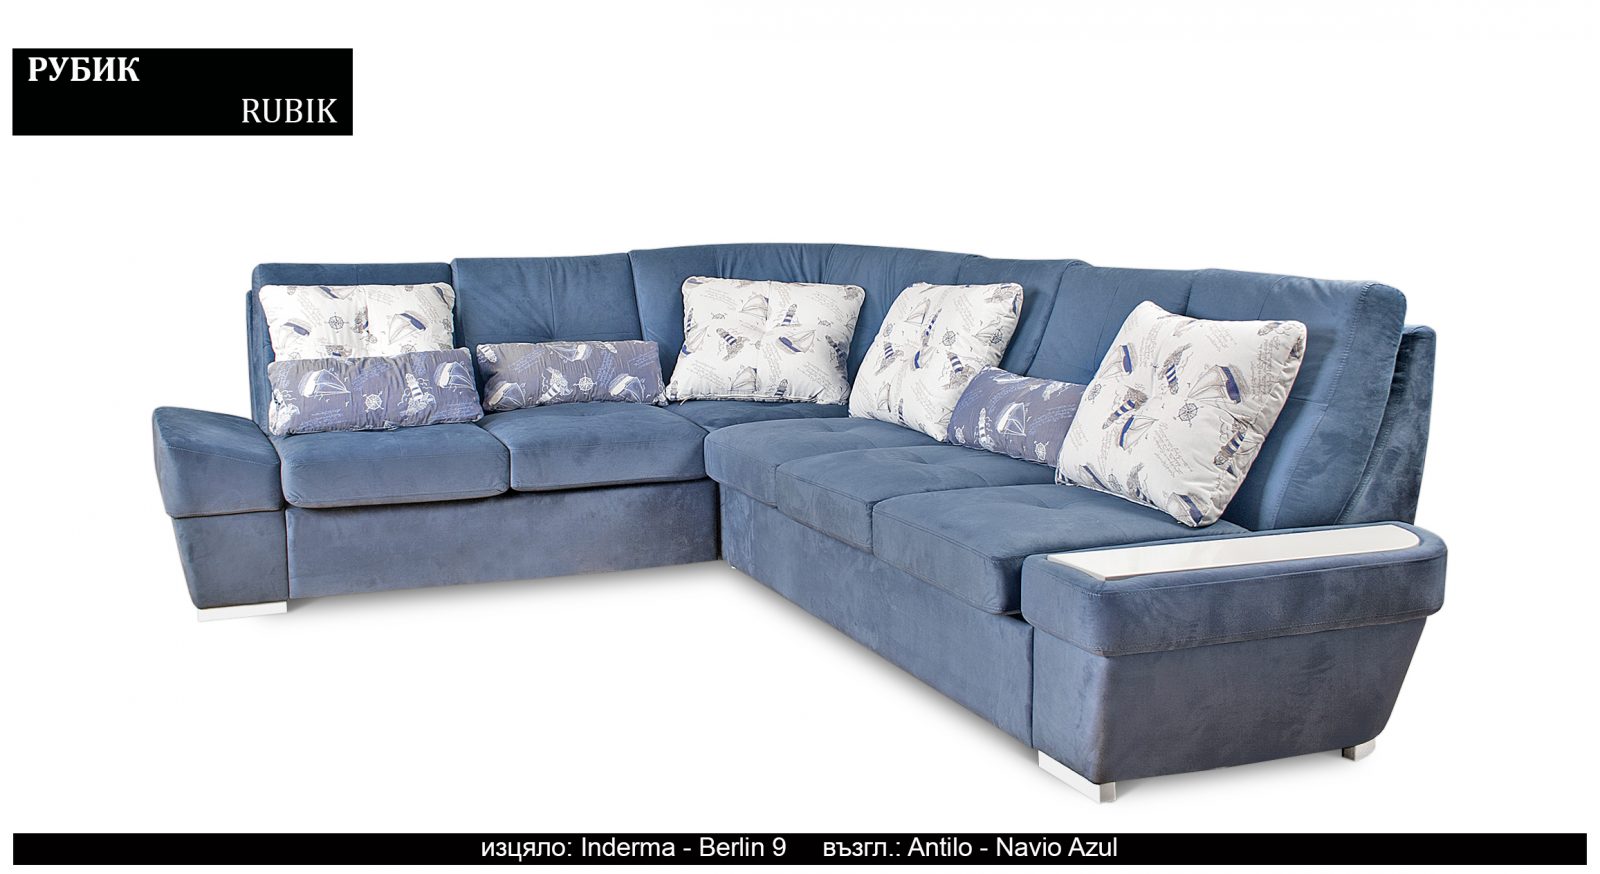 Разтегателен луксозен диван |“РУБИК“| Руди-Ан